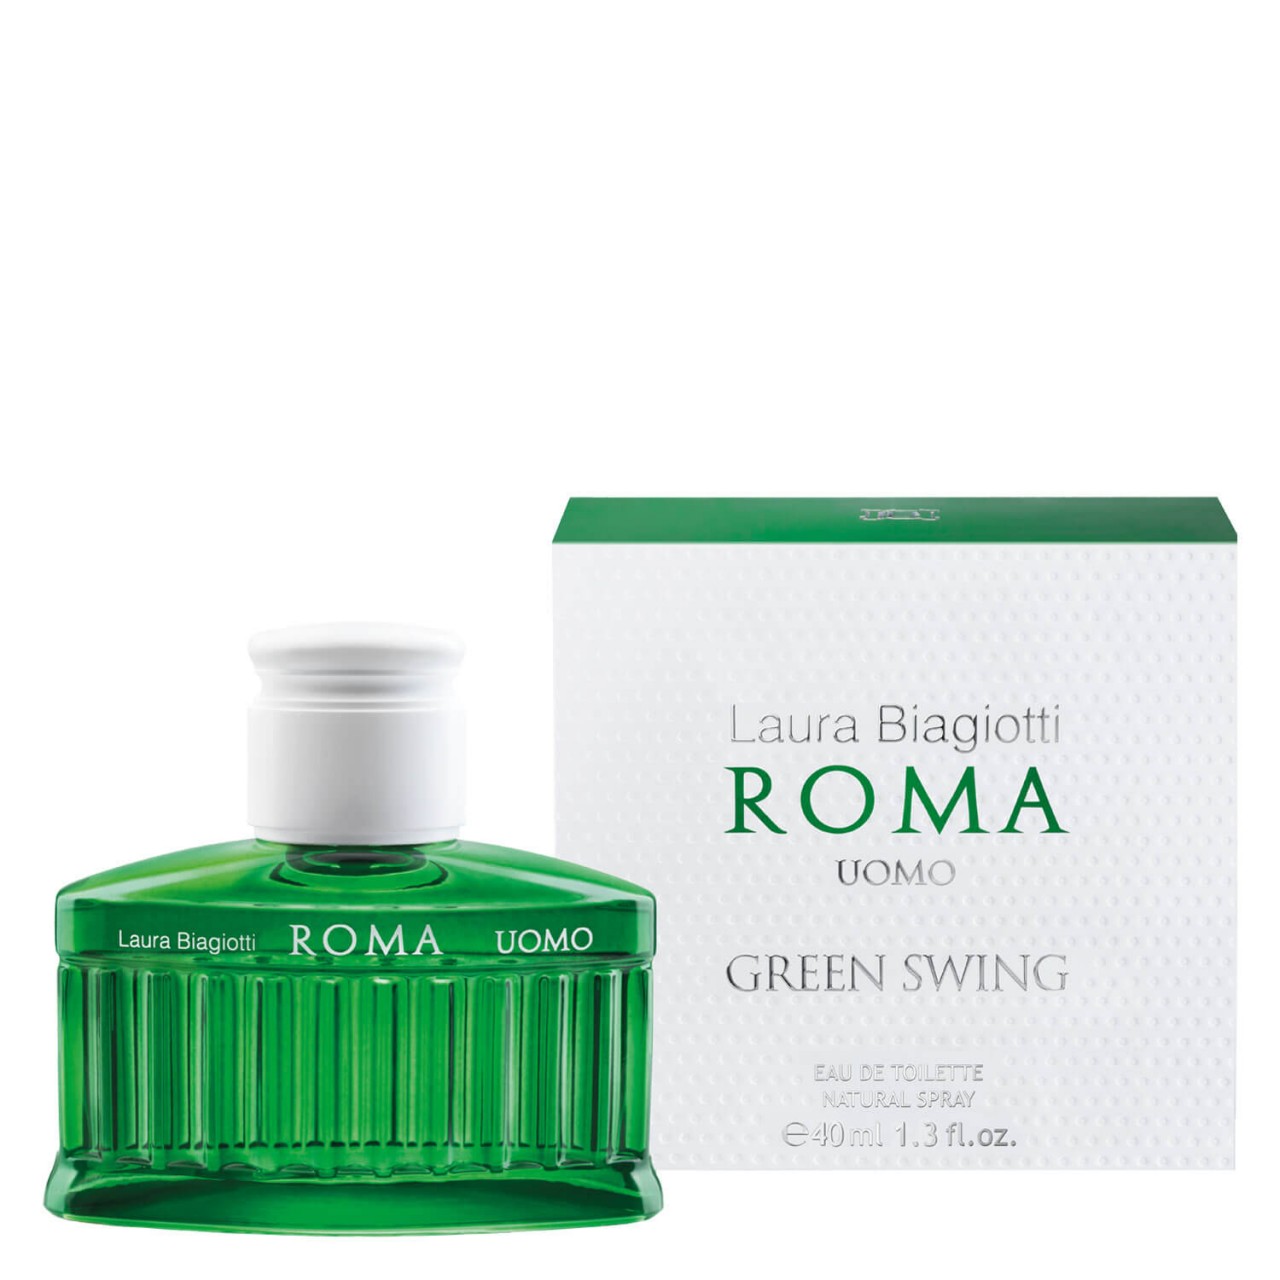 Roma - Uomo Green Swing Eau de Toilette von Laura Biagiotti